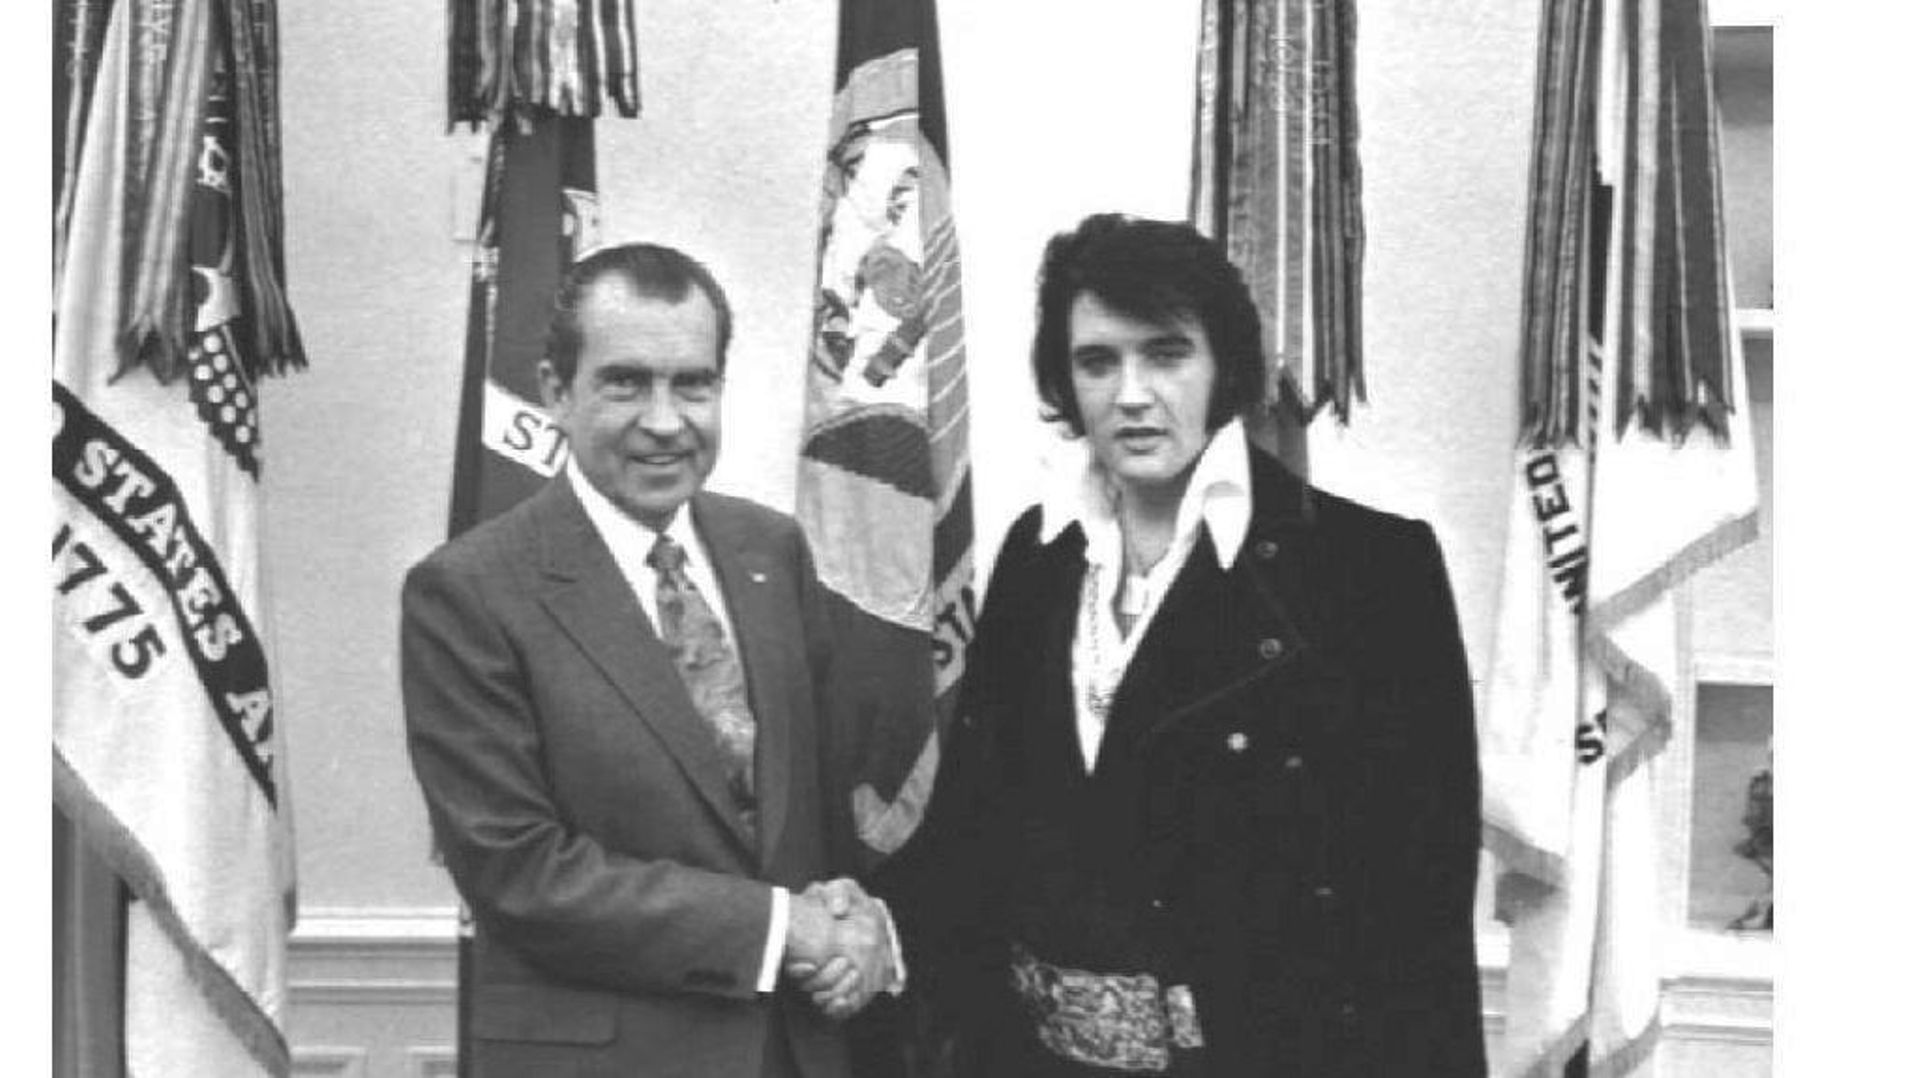 Le président américain Richard Nixon serrant la main de Elvis Presley à la Maison Blanche, 21 décembre 1970.